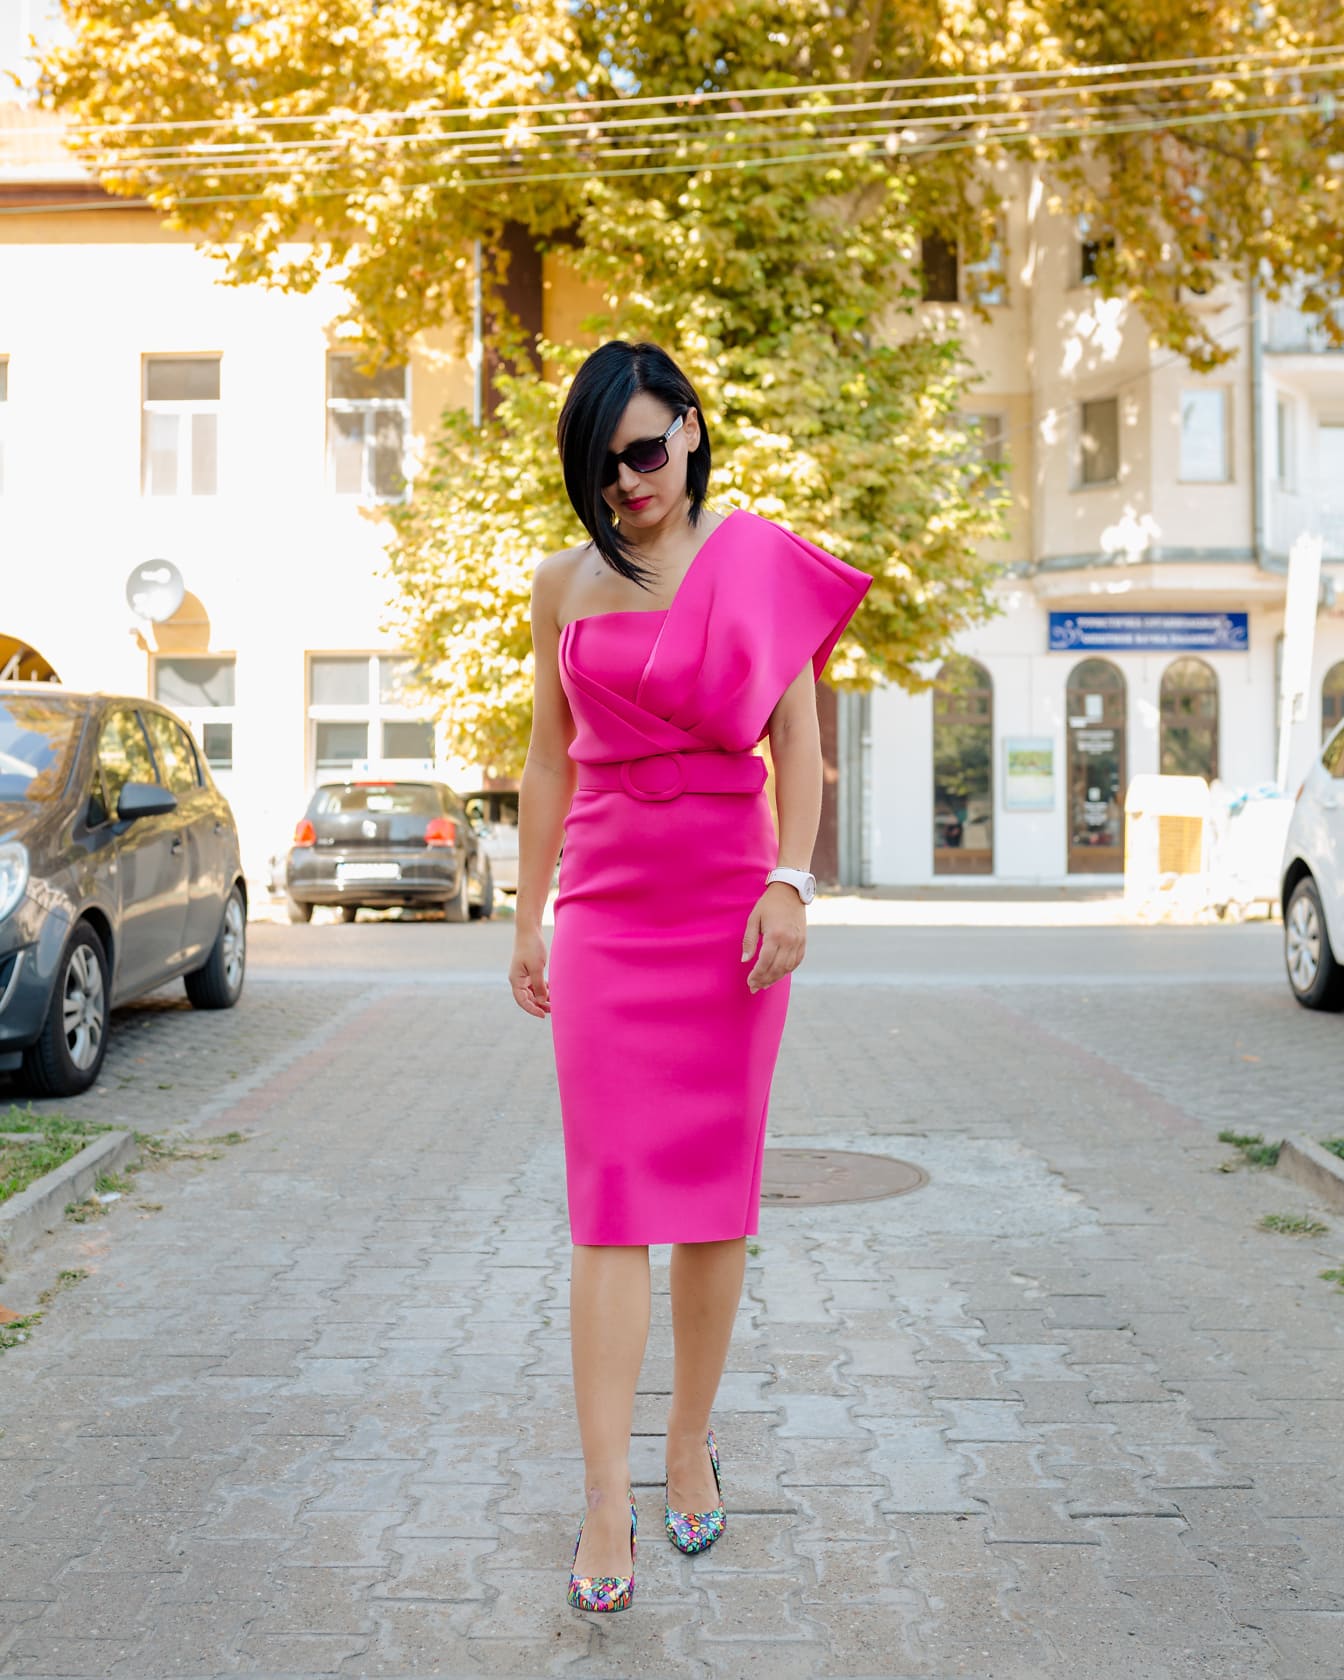 Mulher elegante em um vestido rosa elegante andando em uma rua